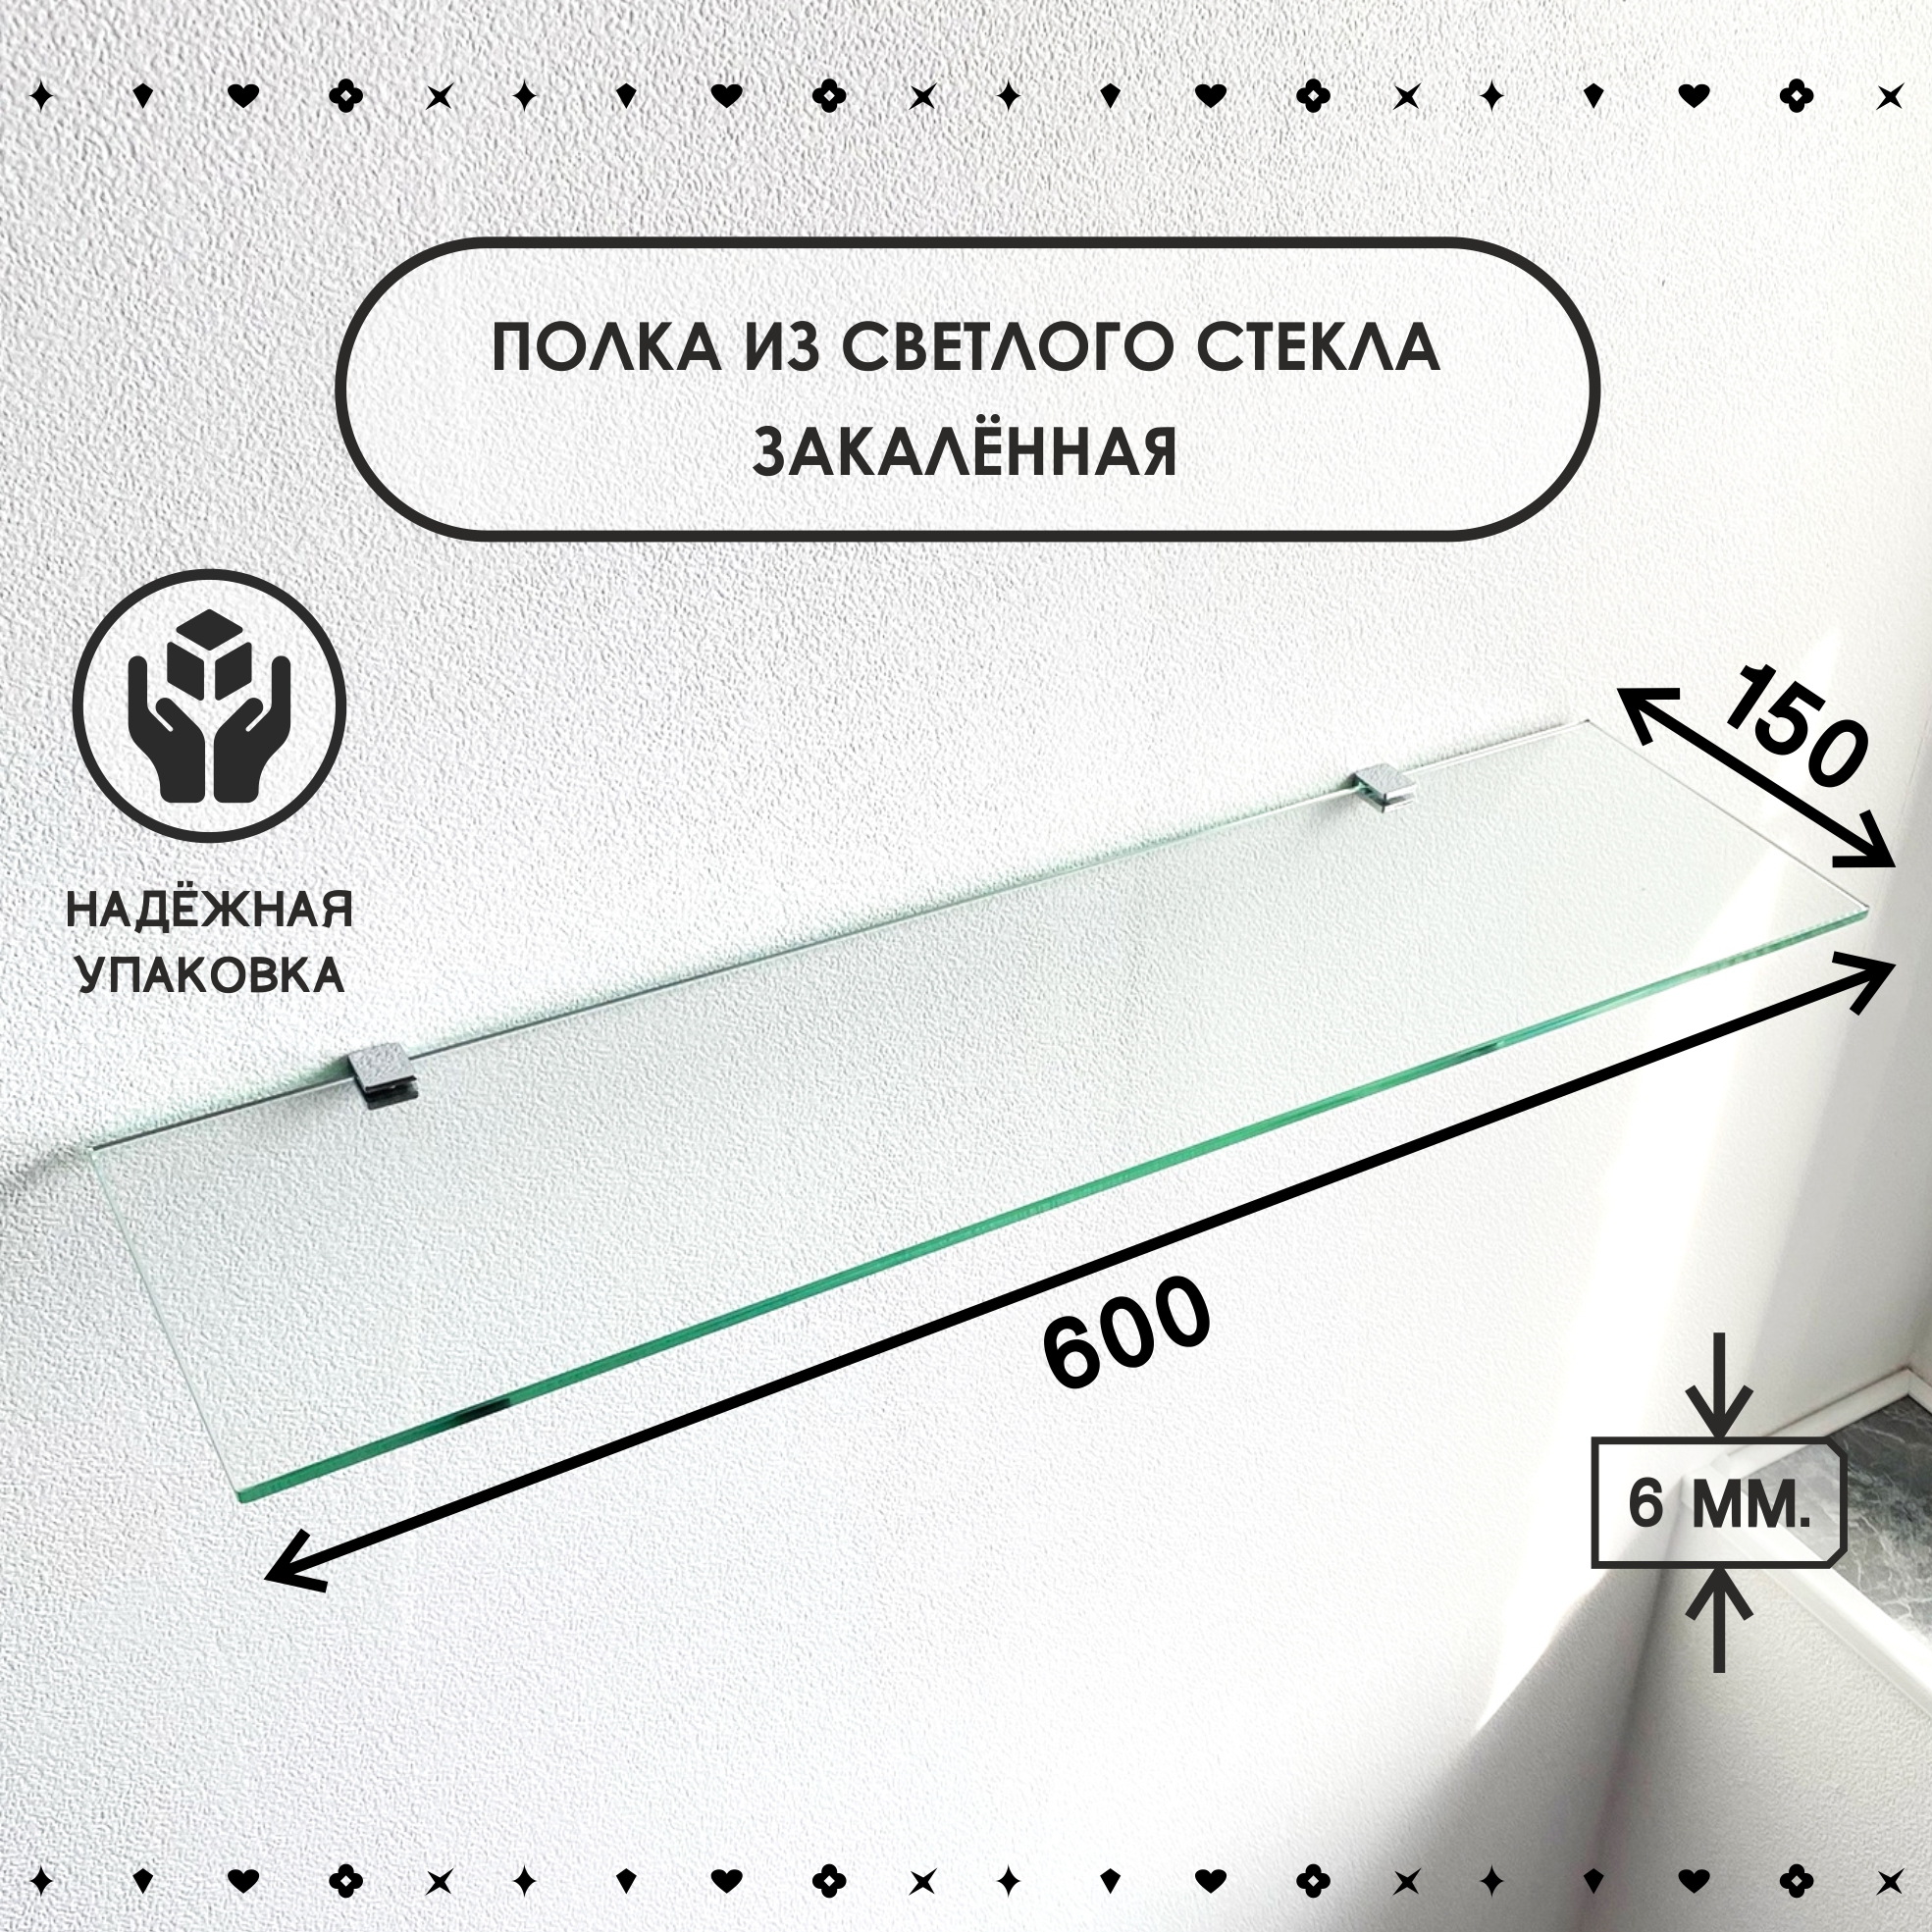 Полка для ванной комнаты СЕДАК из закаленного стекла, толщиной 6 мм 150х600 мм